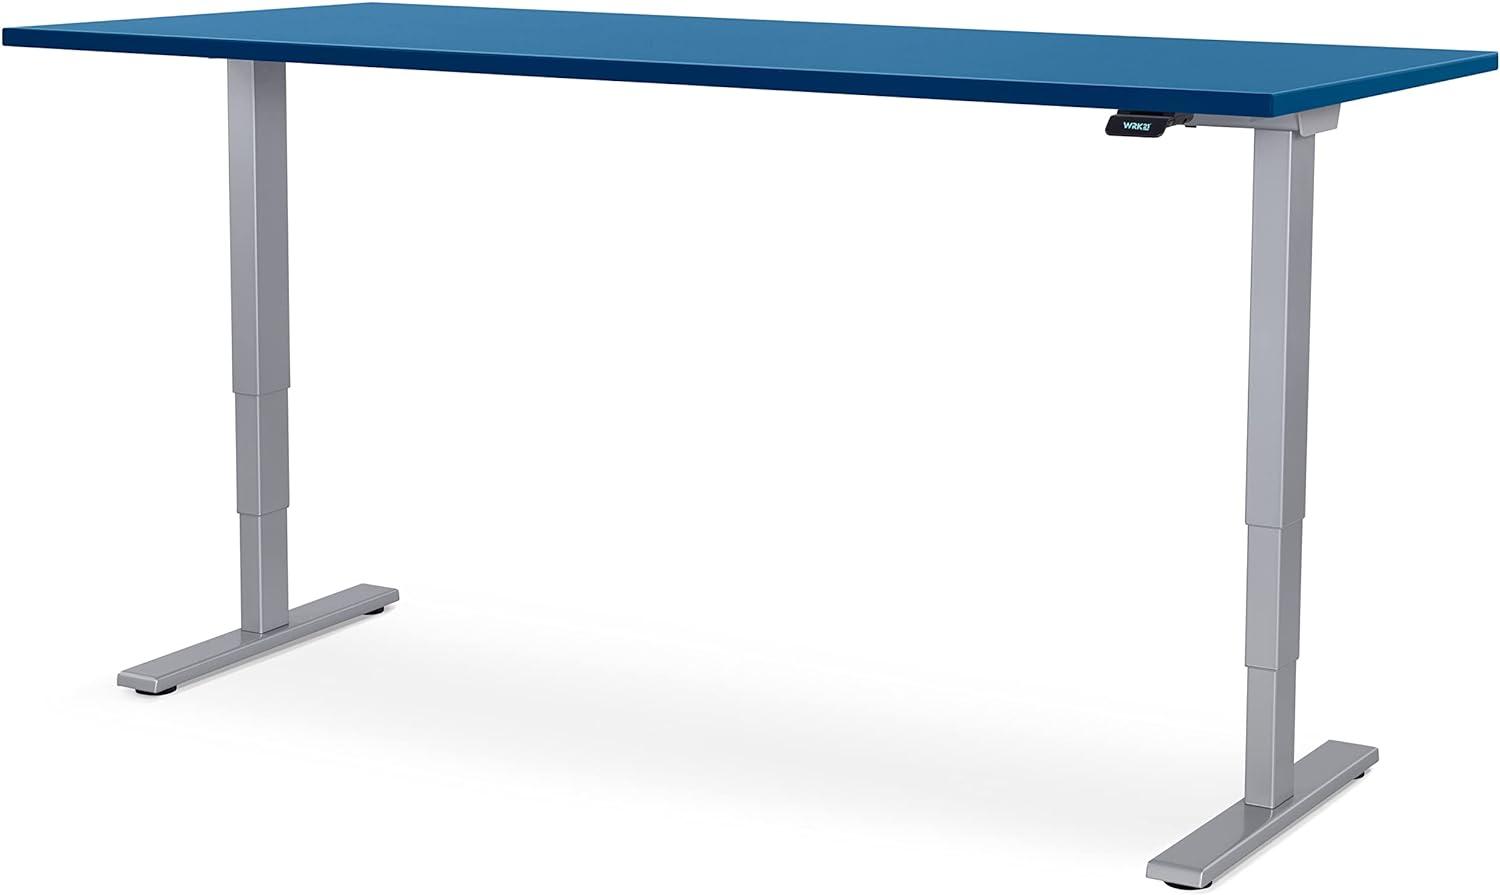 WRK21® SMART Elektronisch höhenverstellbarer Schreibtisch, Holz, Premium Ozean-Blau/Grau, 180 x 80 x 61-126 cm Bild 1